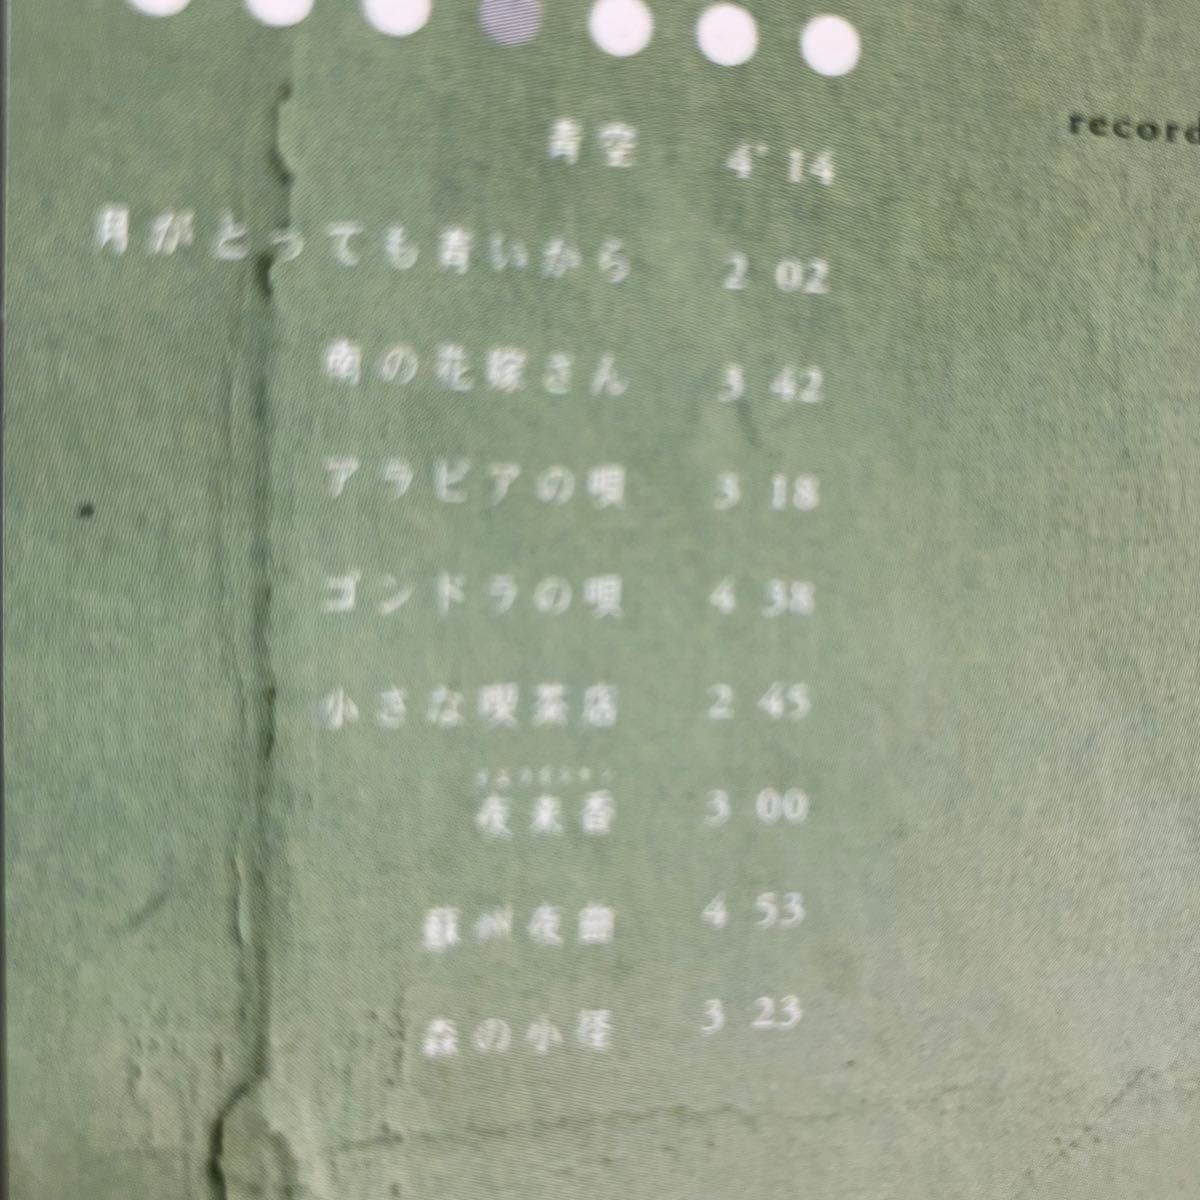 遊佐未森 檸檬 レモン音楽CD 邦楽 J-POP 昭和歌謡 カバーアルバム